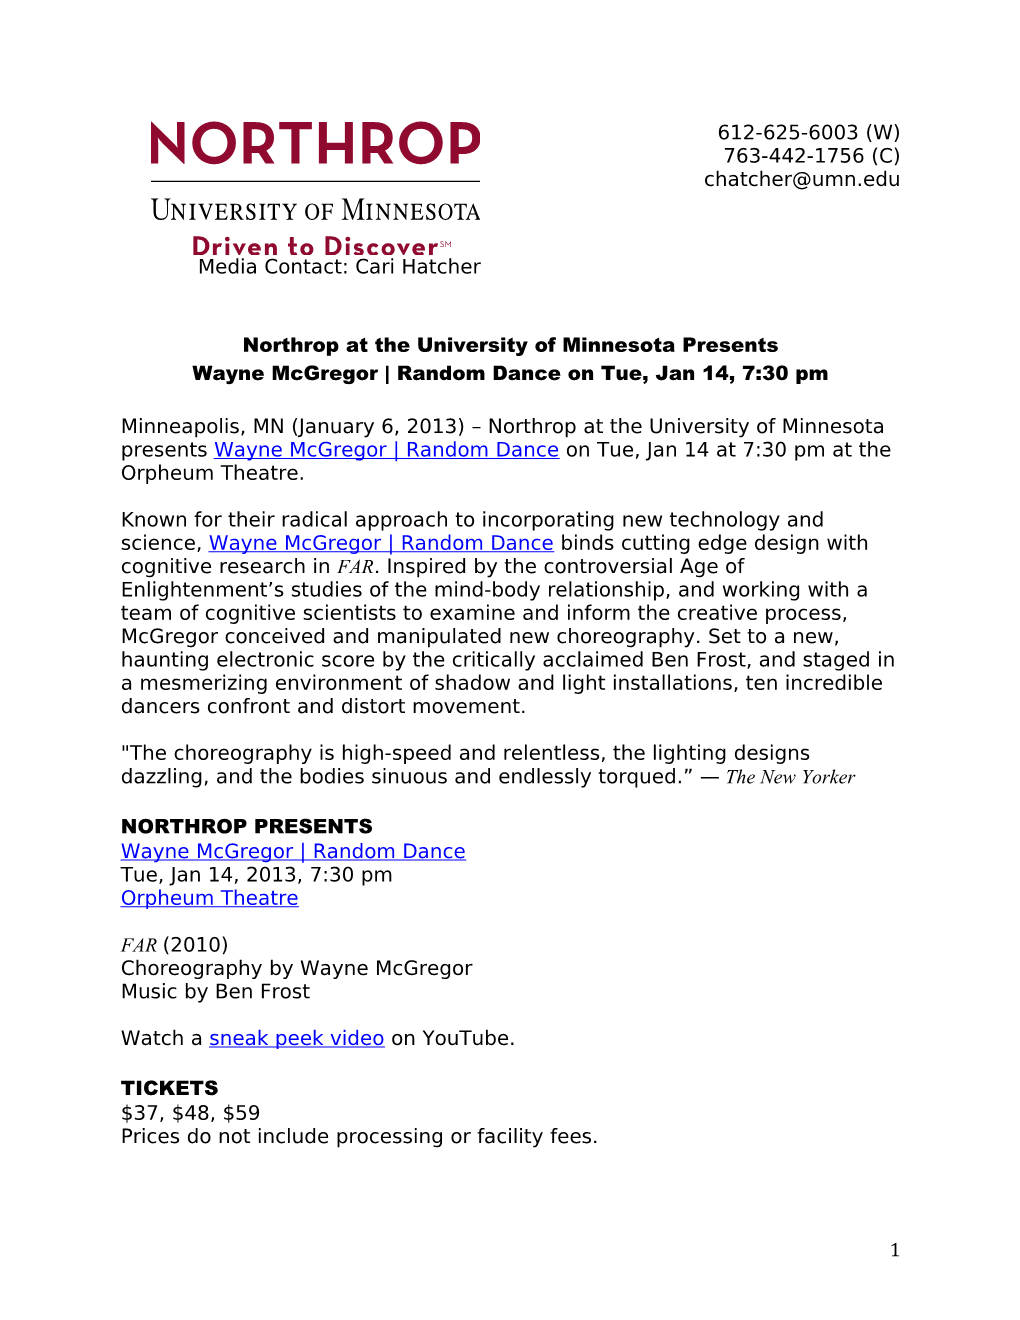 Northrop Moves Presents 2012-13 Northrop Season, Including Northrop Dance, Women of Substance